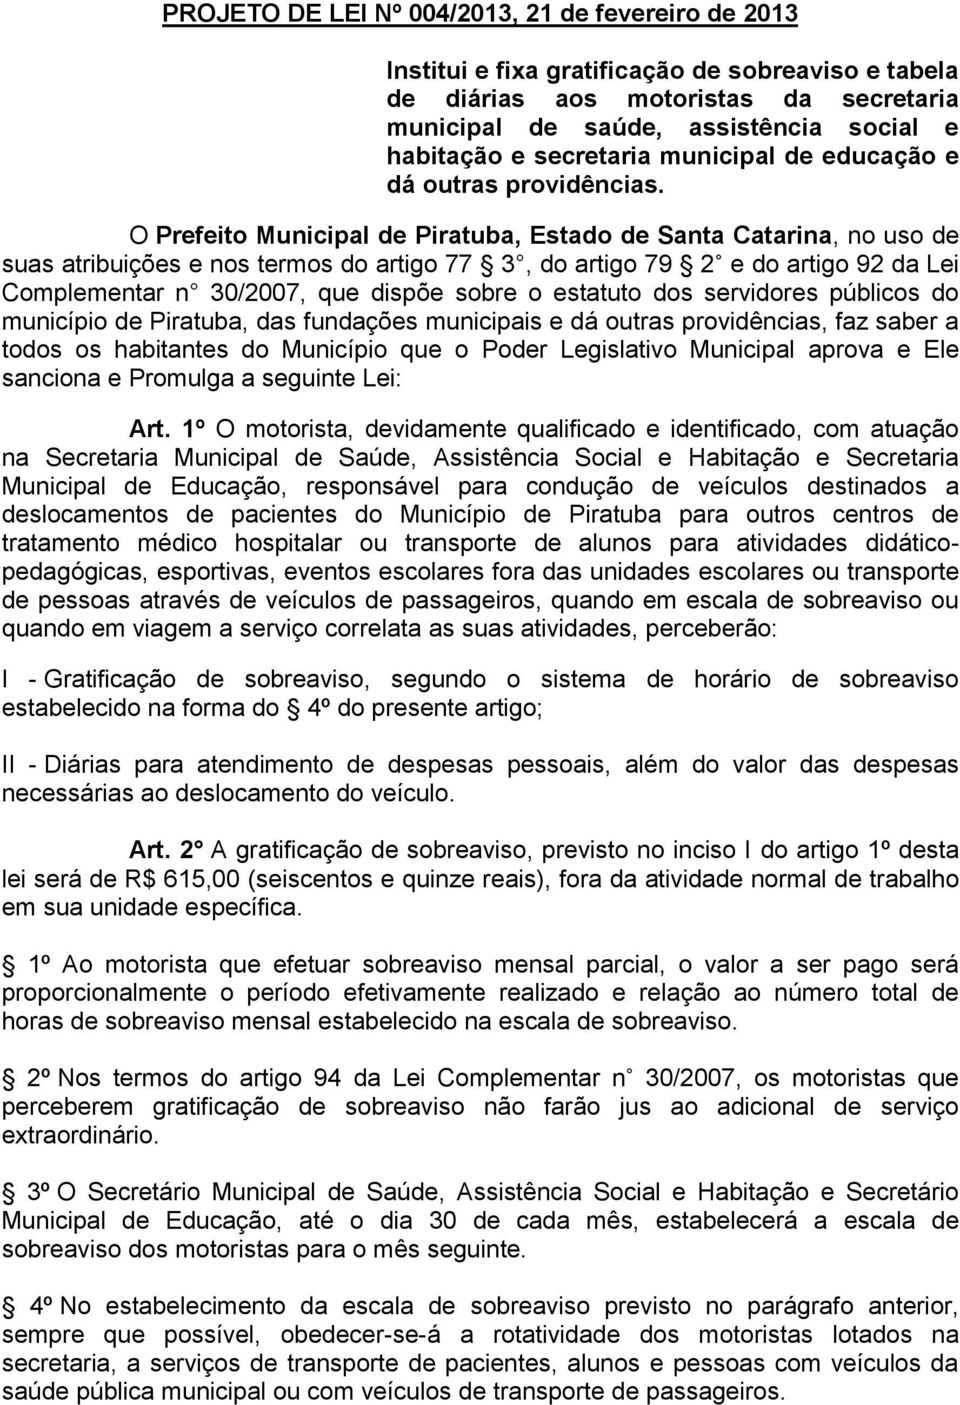 O Prefeito Municipal de Piratuba, Estado de Santa Catarina, no uso de suas atribuições e nos termos do artigo 77 3, do artigo 79 2 e do artigo 92 da Lei Complementar n 30/2007, que dispõe sobre o